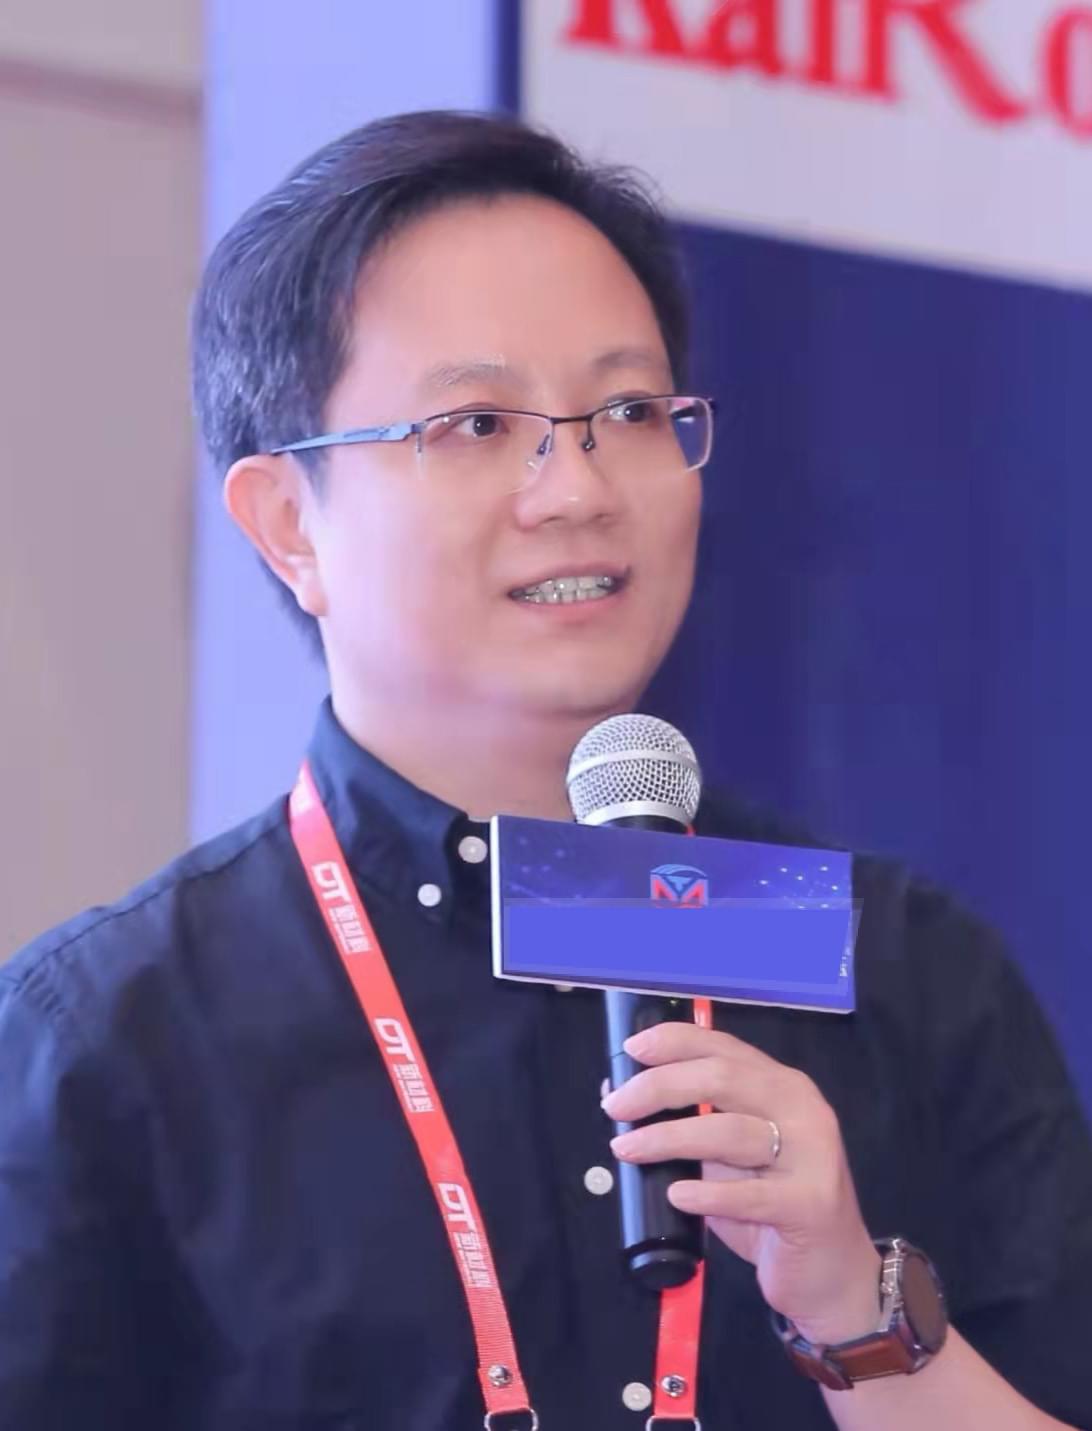 Dr. Zhiqiang Zeng